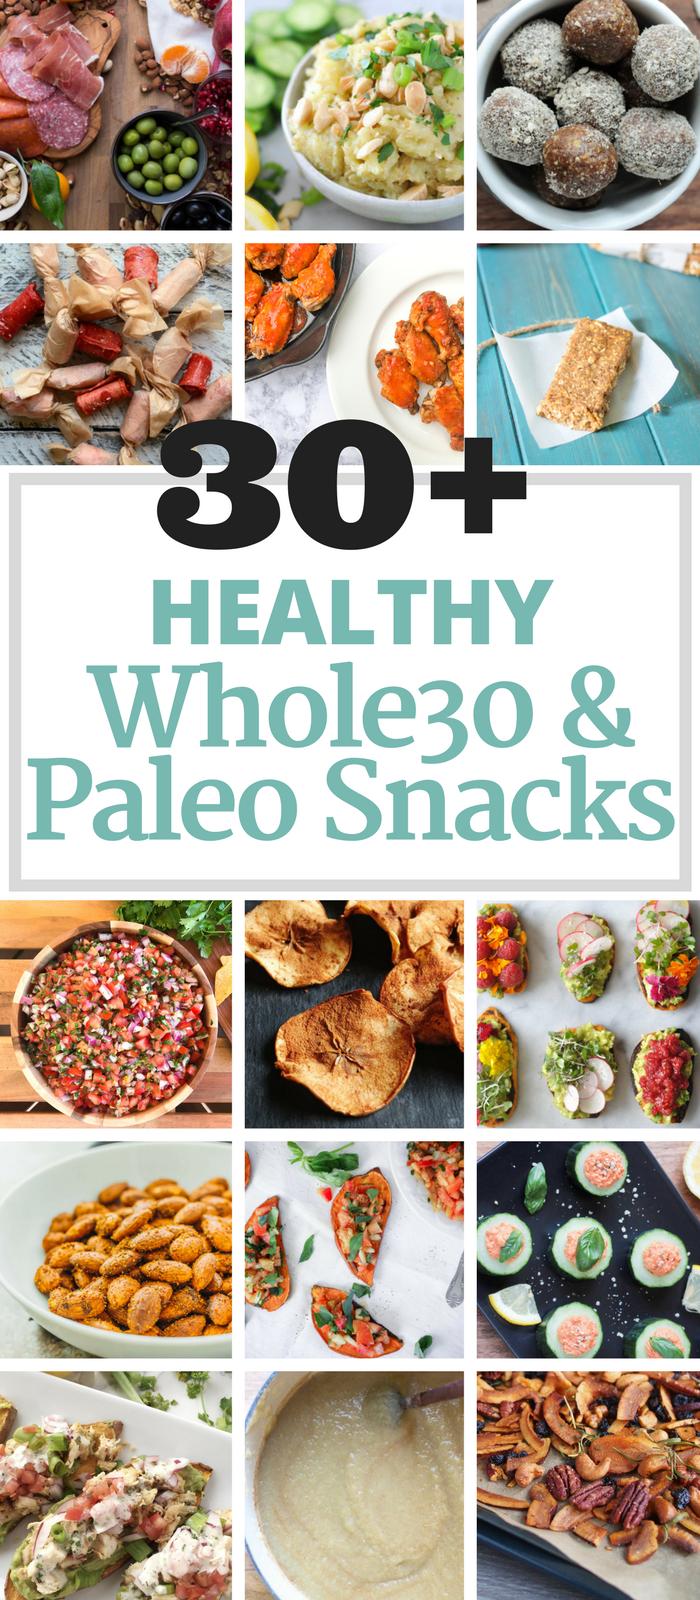 30+ Healthy Whole30 & Paleo Snacks via The Whole Cook